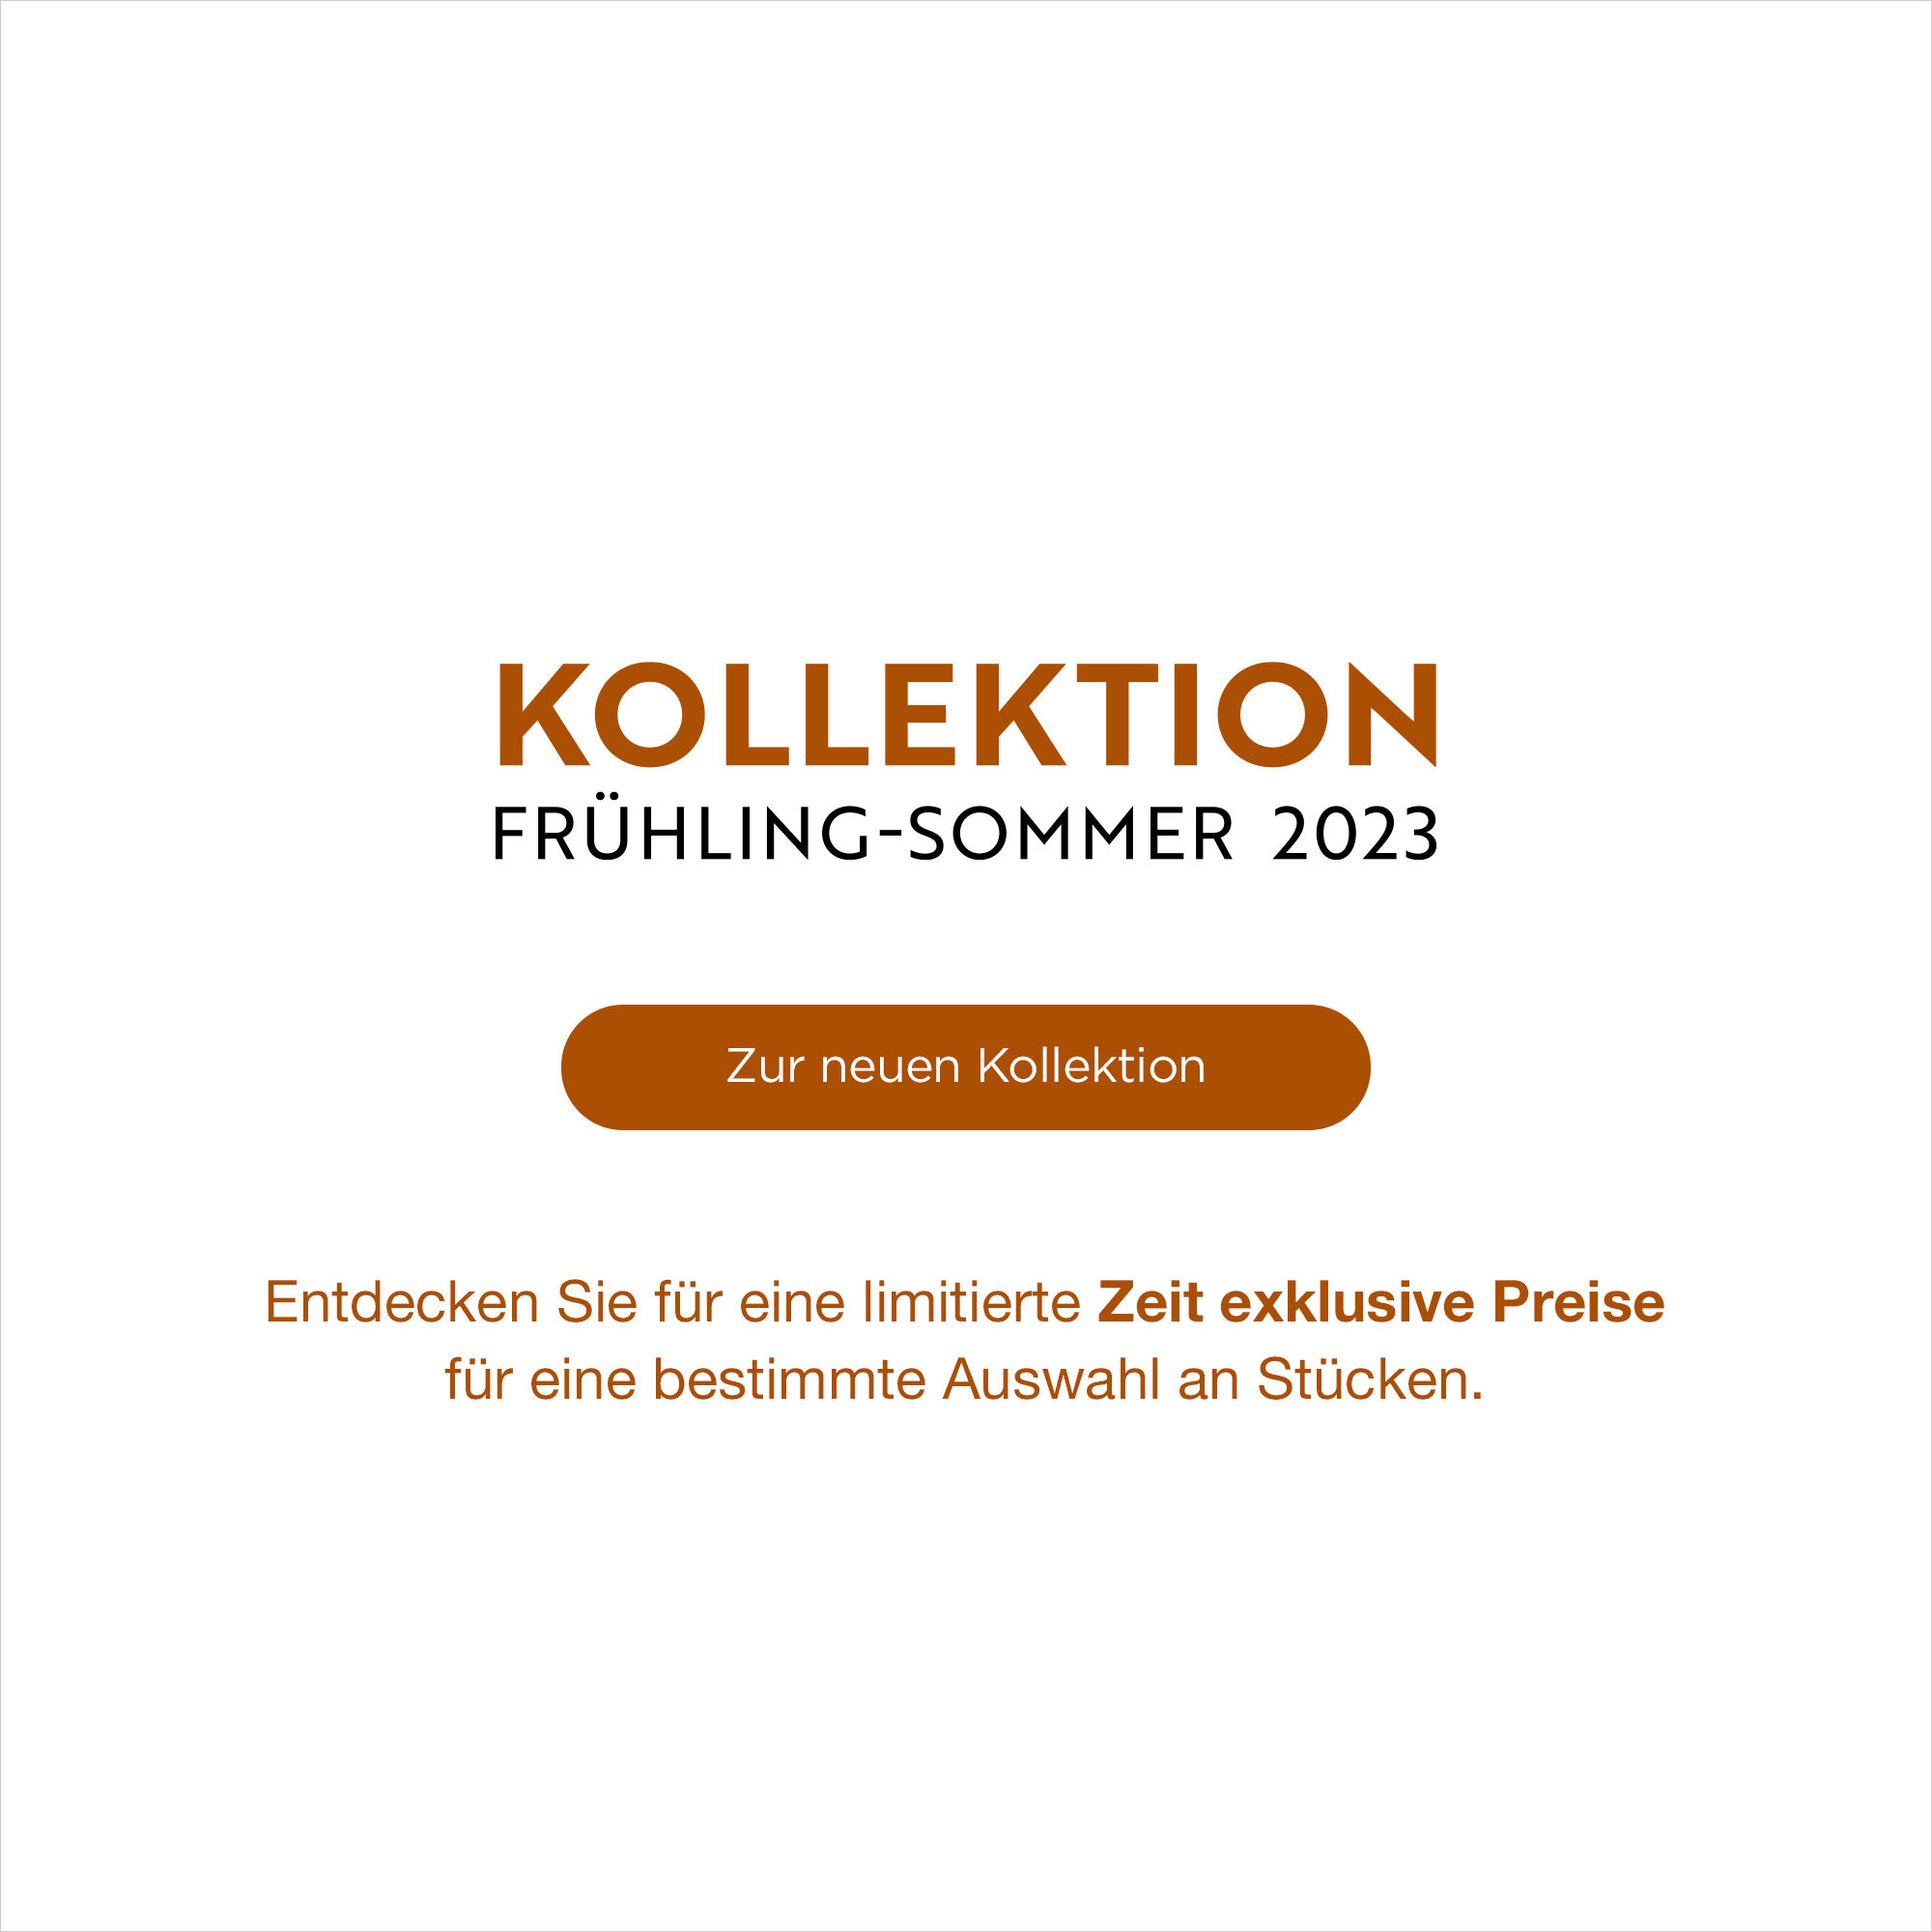 KOLLEKTION FRÜHLING-SOMMER 2023